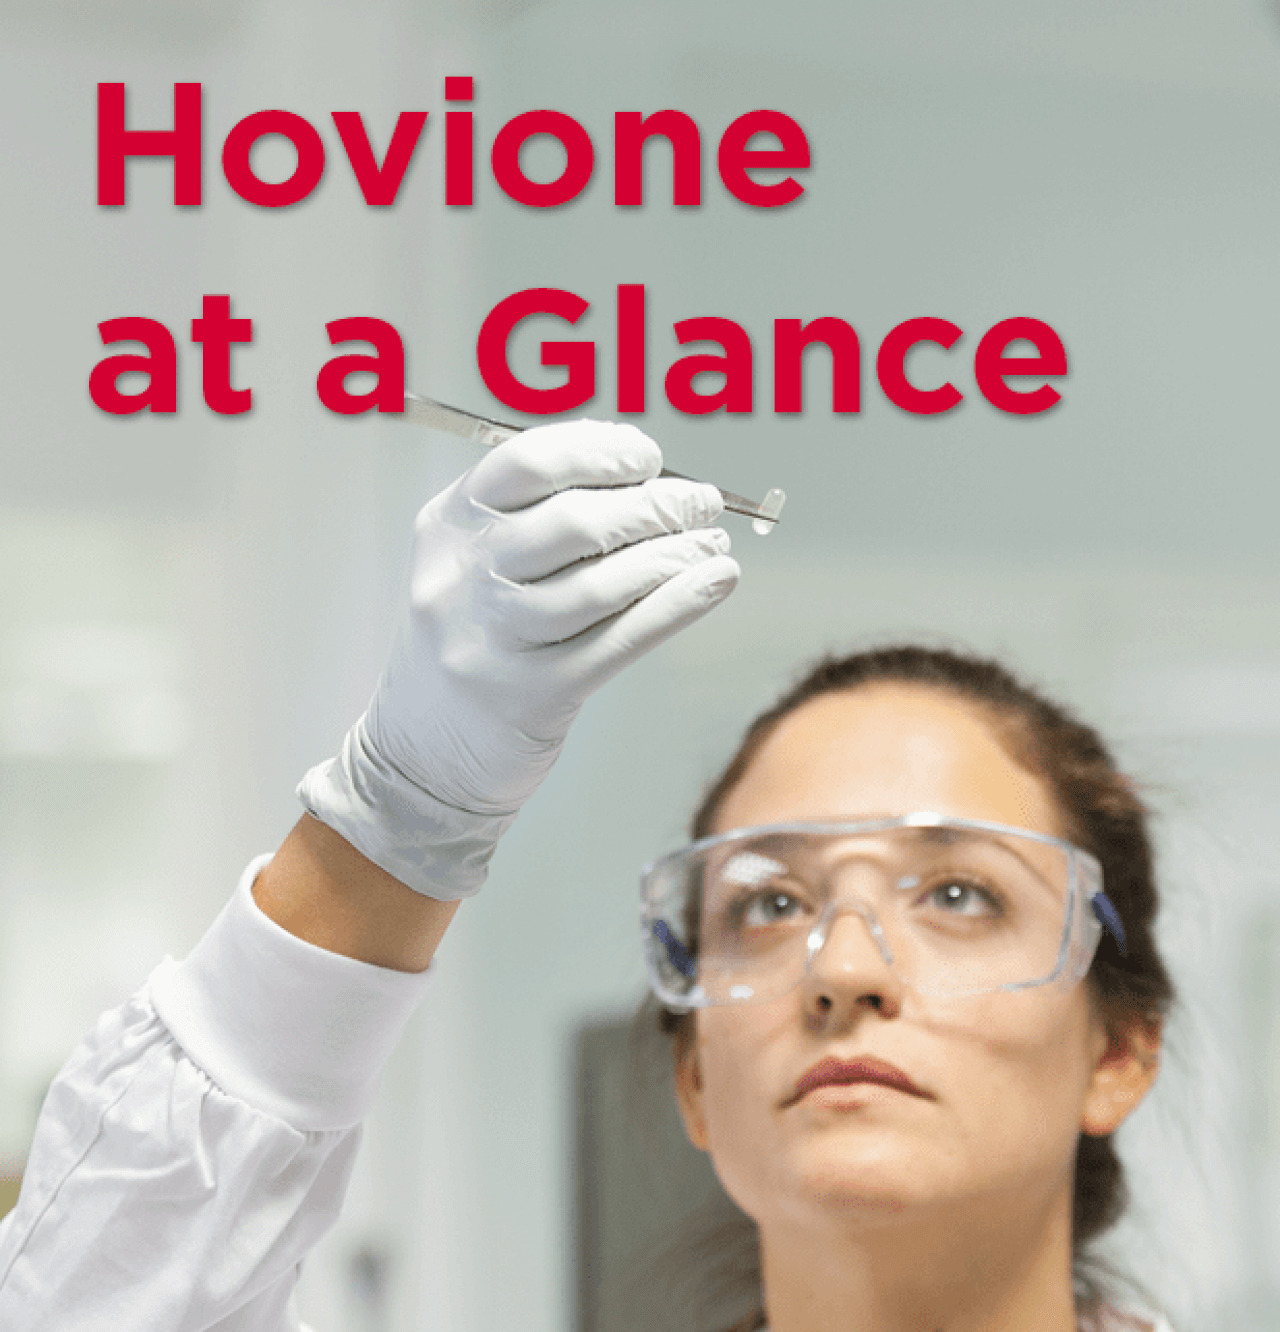 Hovione at a Glance | Hovione